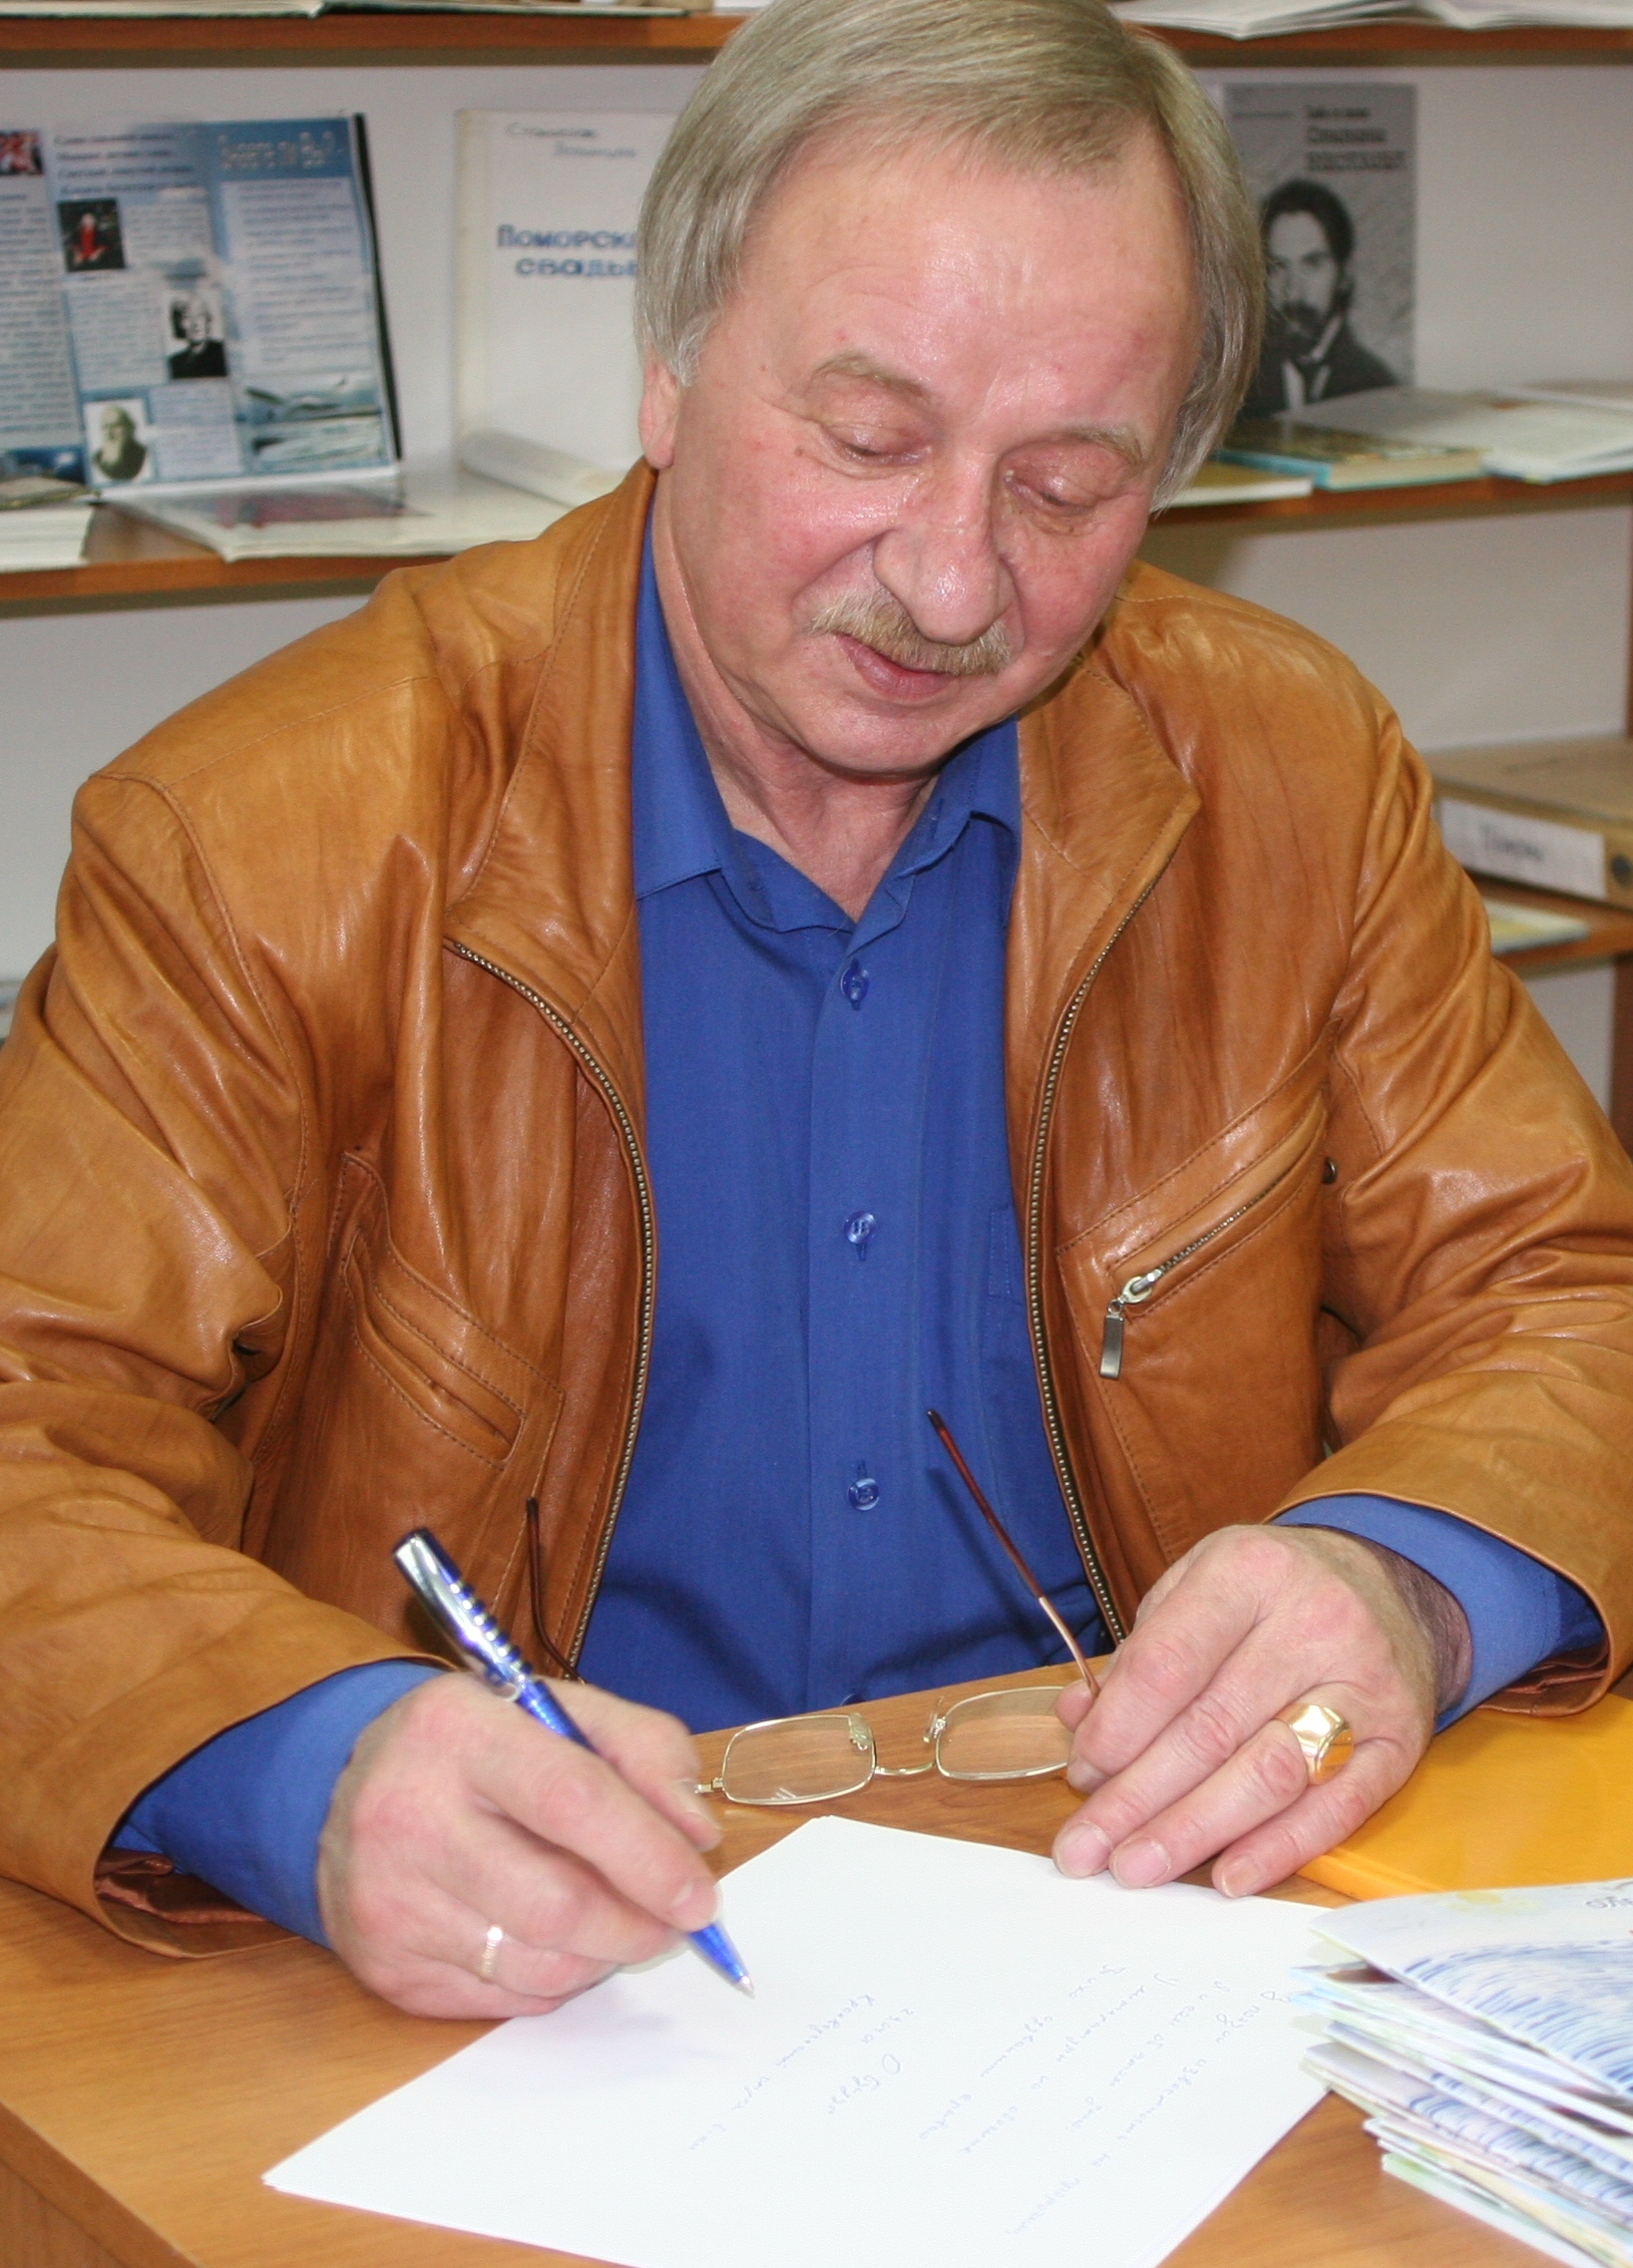 Олег Бундур